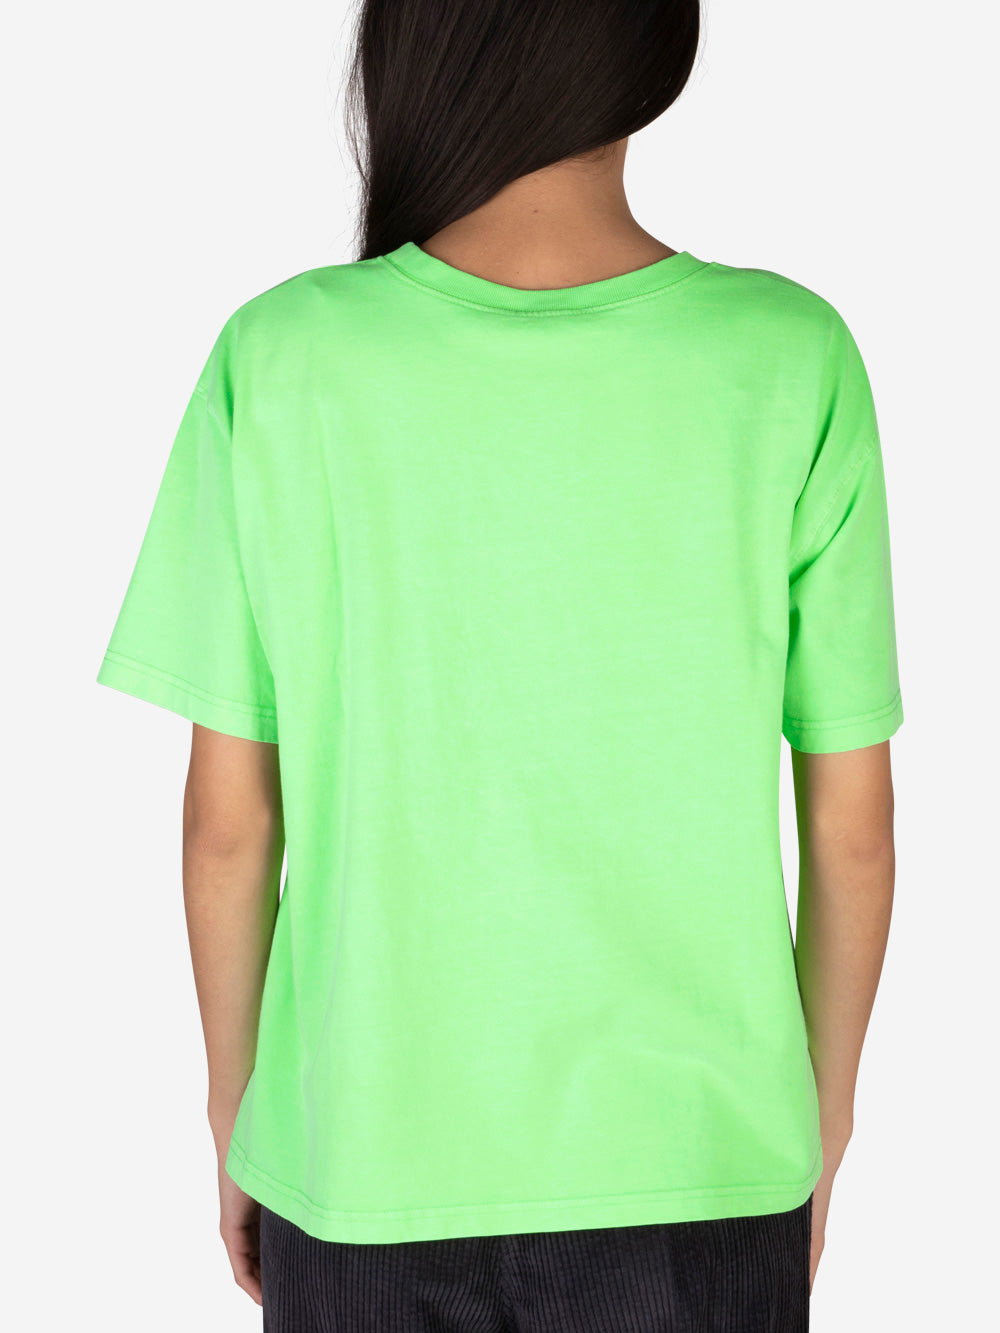 AMERICAN VINTAGE T-shirt Fizvalley verde fluo Verde fluo Urbanstaroma